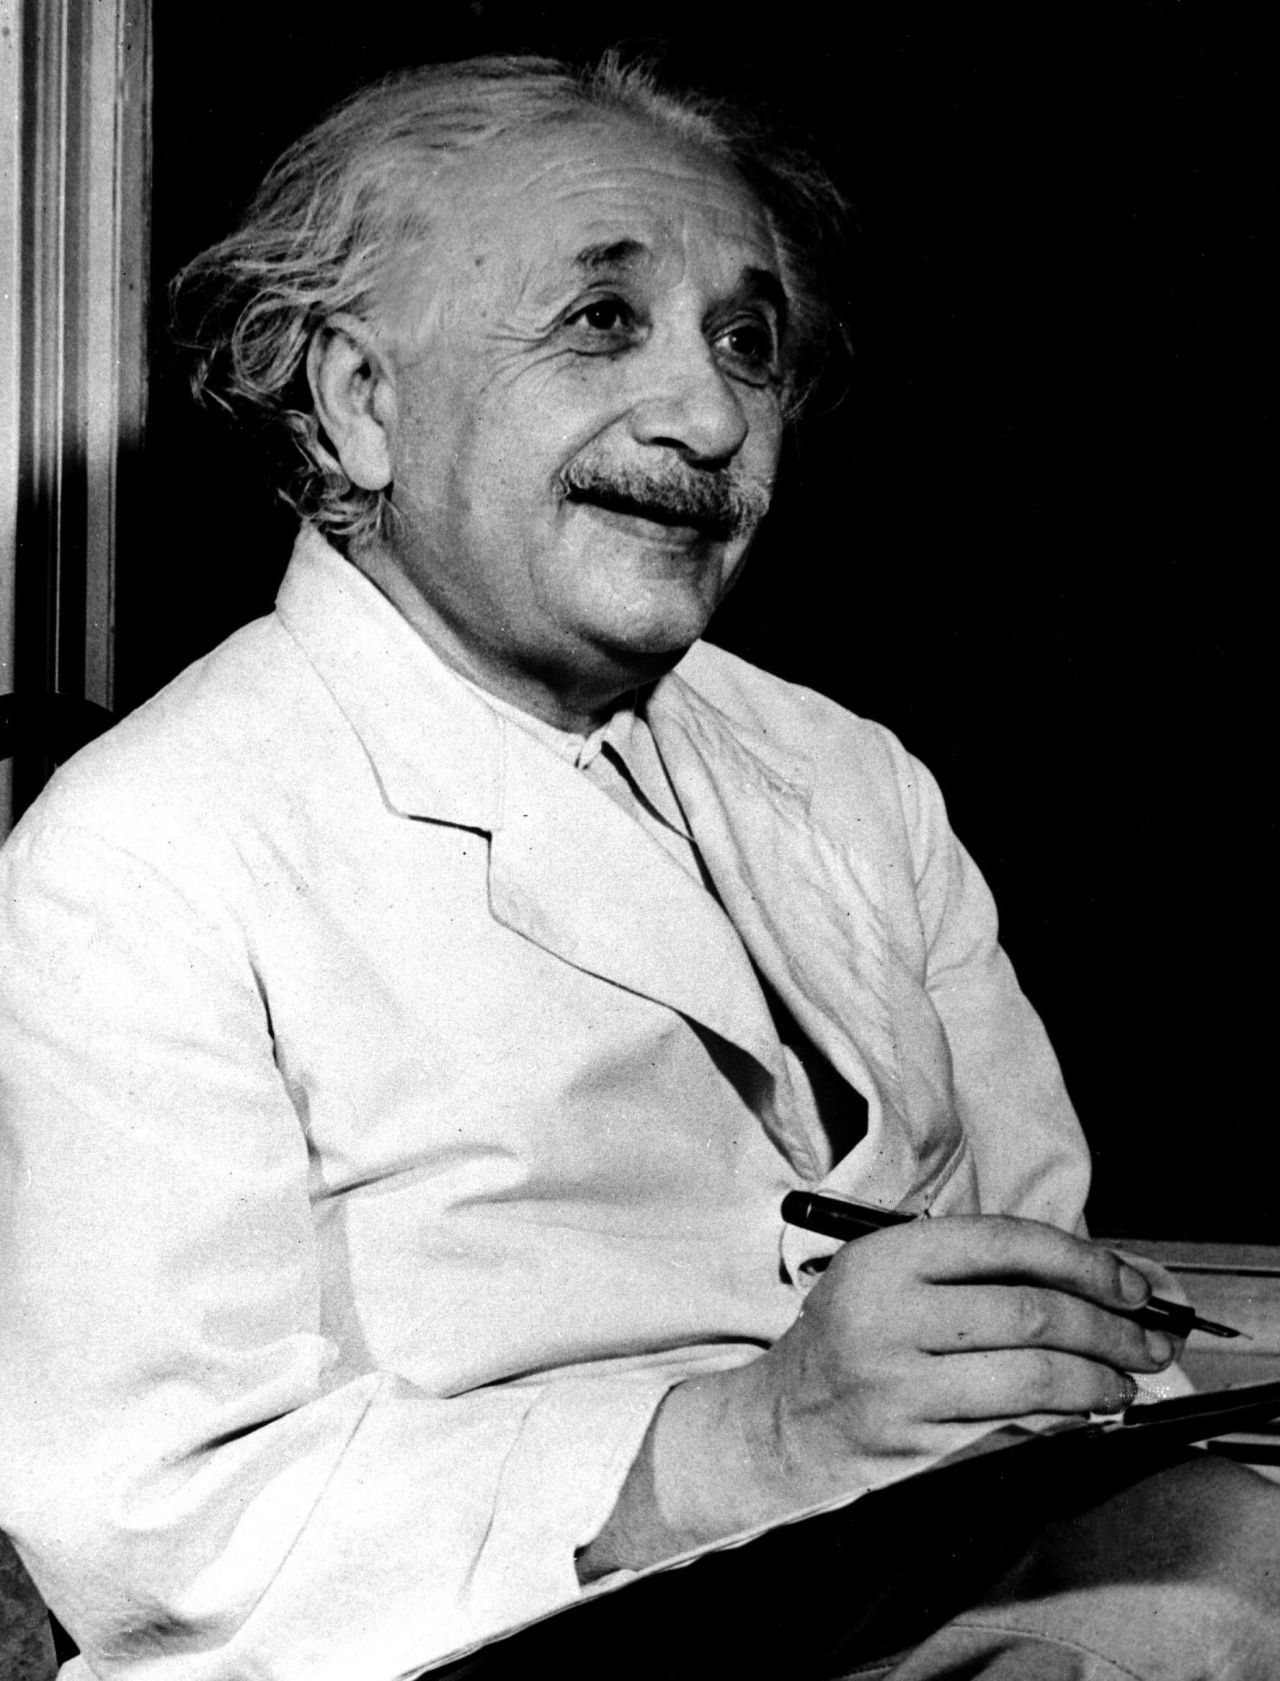 Das weltbekannte Physik-Genie Albert Einstein (1879-1955) hatte jüdische Wurzeln. Er floh bereits in den 1930ern, zur Zeit des Aufstiegs der Nationalsozialisten, in die USA. Dort lebte er bis zu seinem Tod 1955 mit seiner Frau Elsa im Exil.